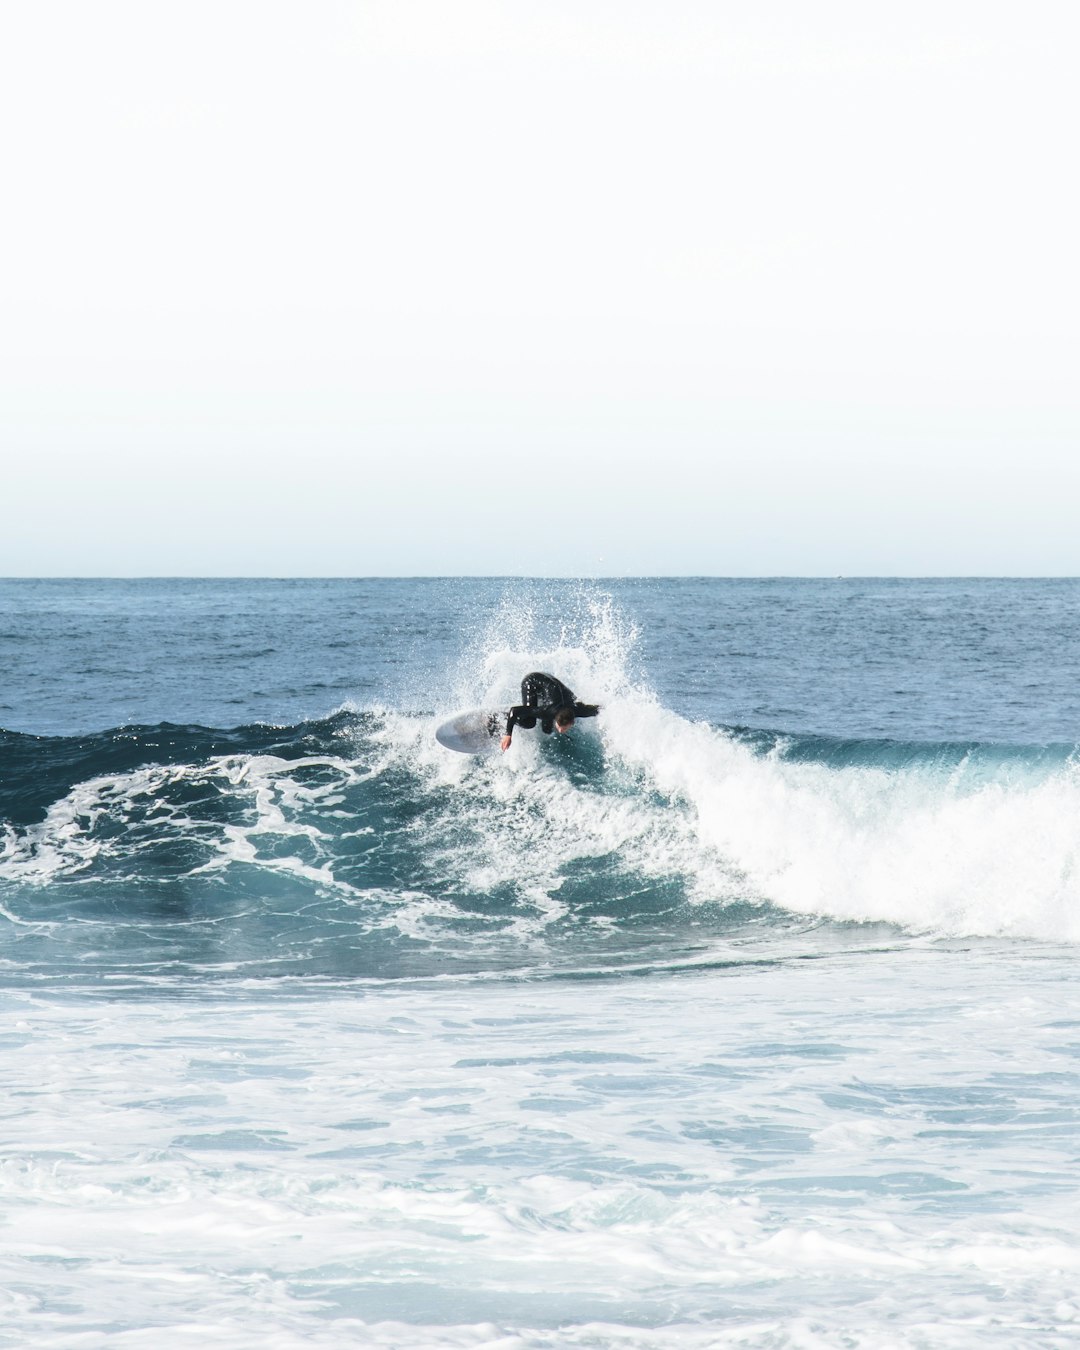 Surfing photo spot Sydney Bondi Beach